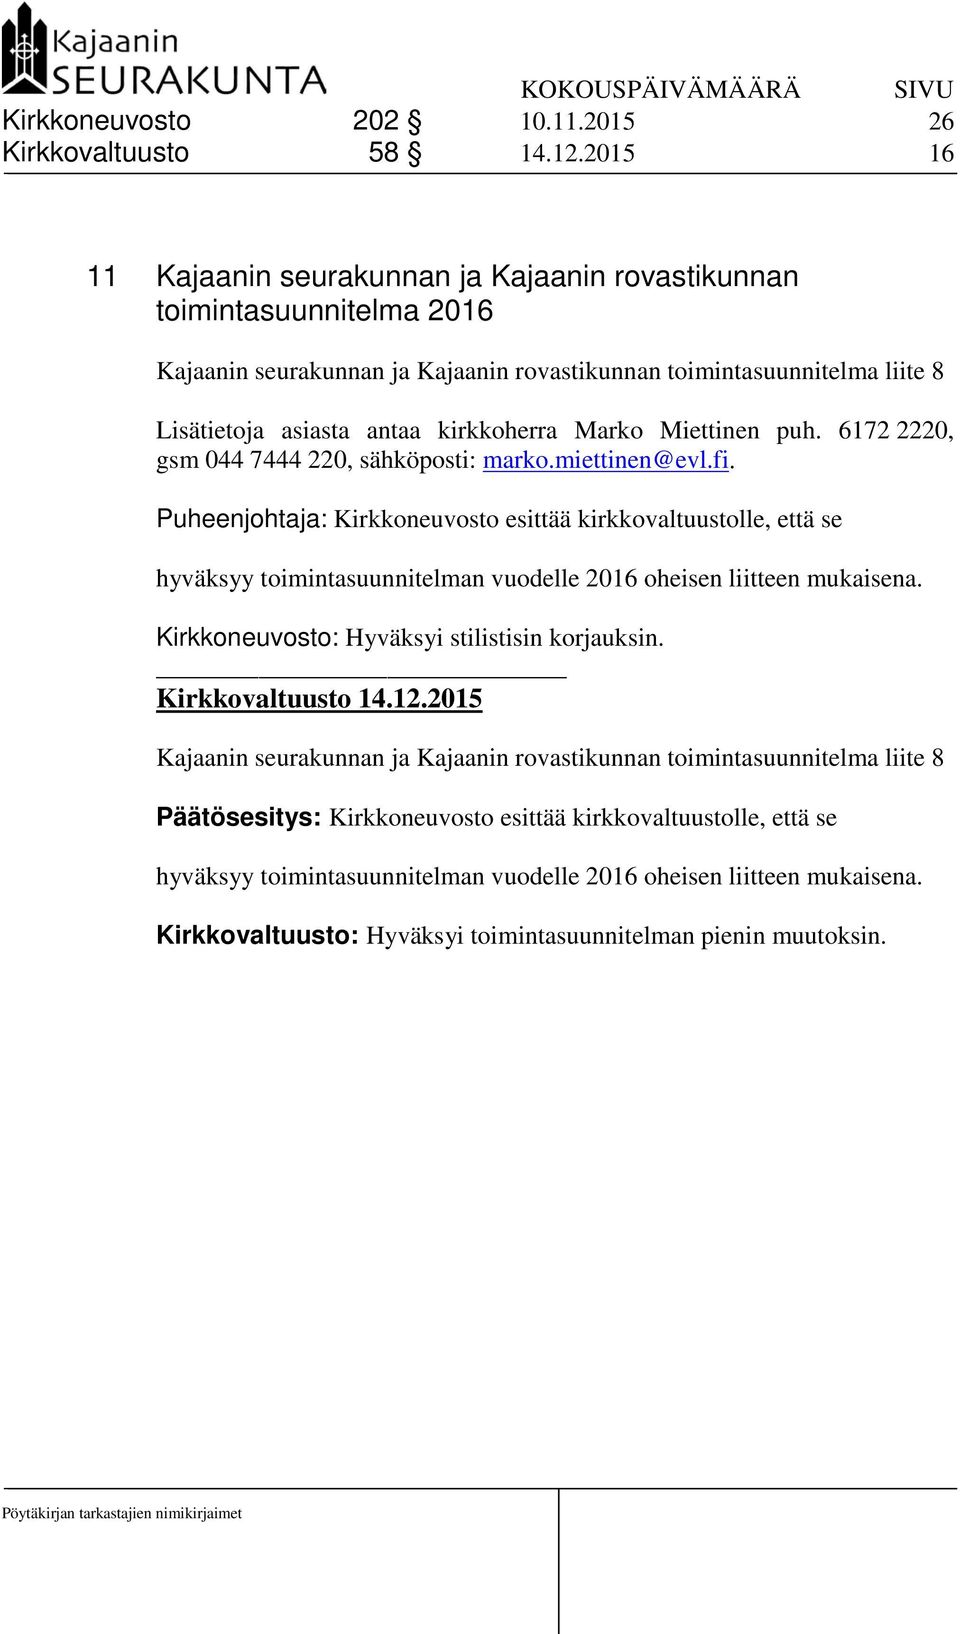 Marko Miettinen puh. 6172 2220, gsm 044 7444 220, sähköposti: marko.miettinen@evl.fi.